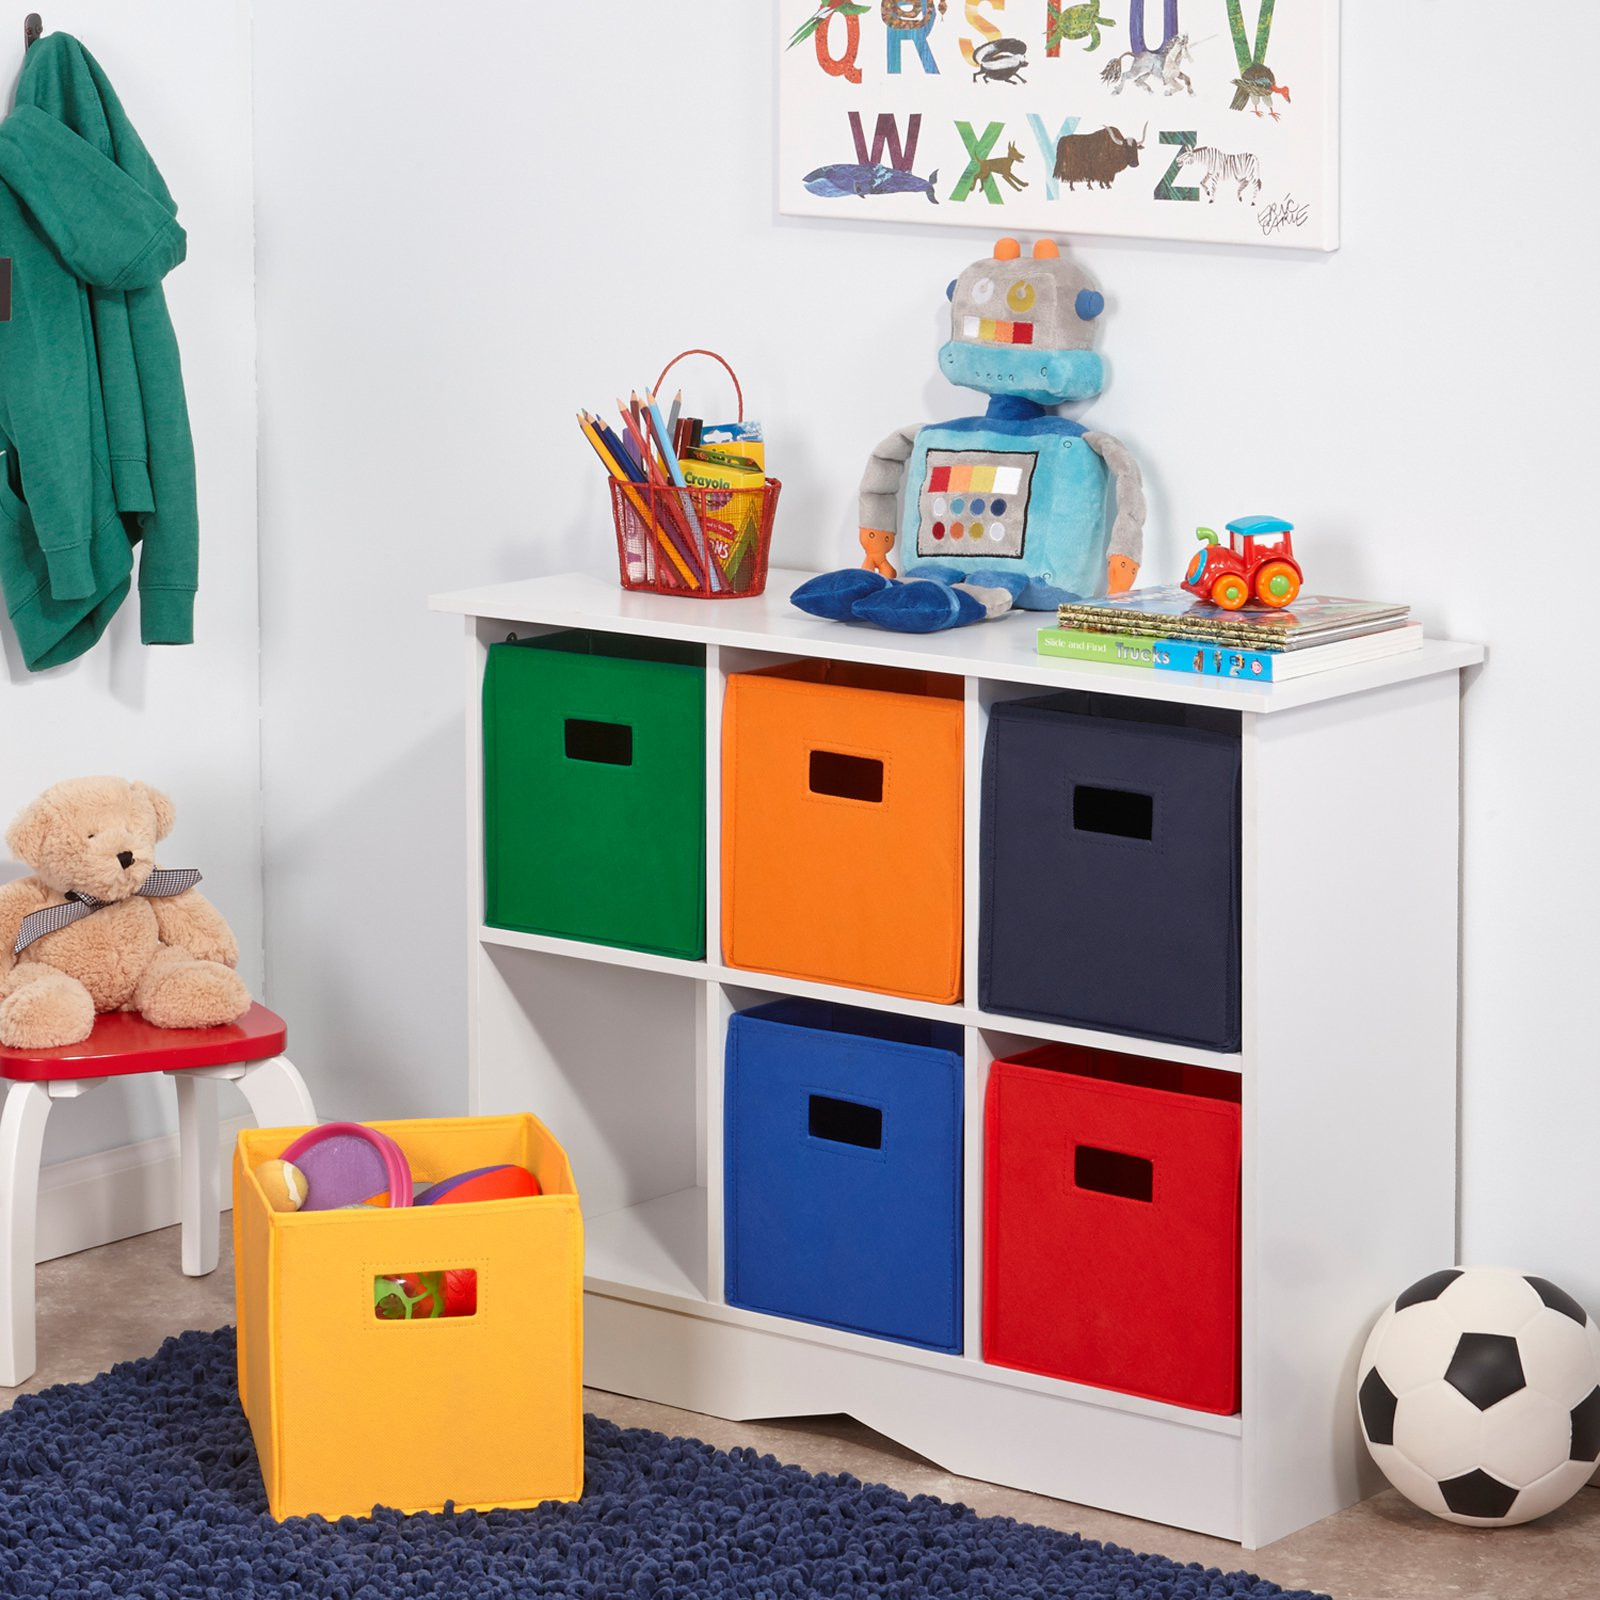 Children Storage Bin
 RiverRidge Kids White Cabinet with 6 Bins Toy Storage at